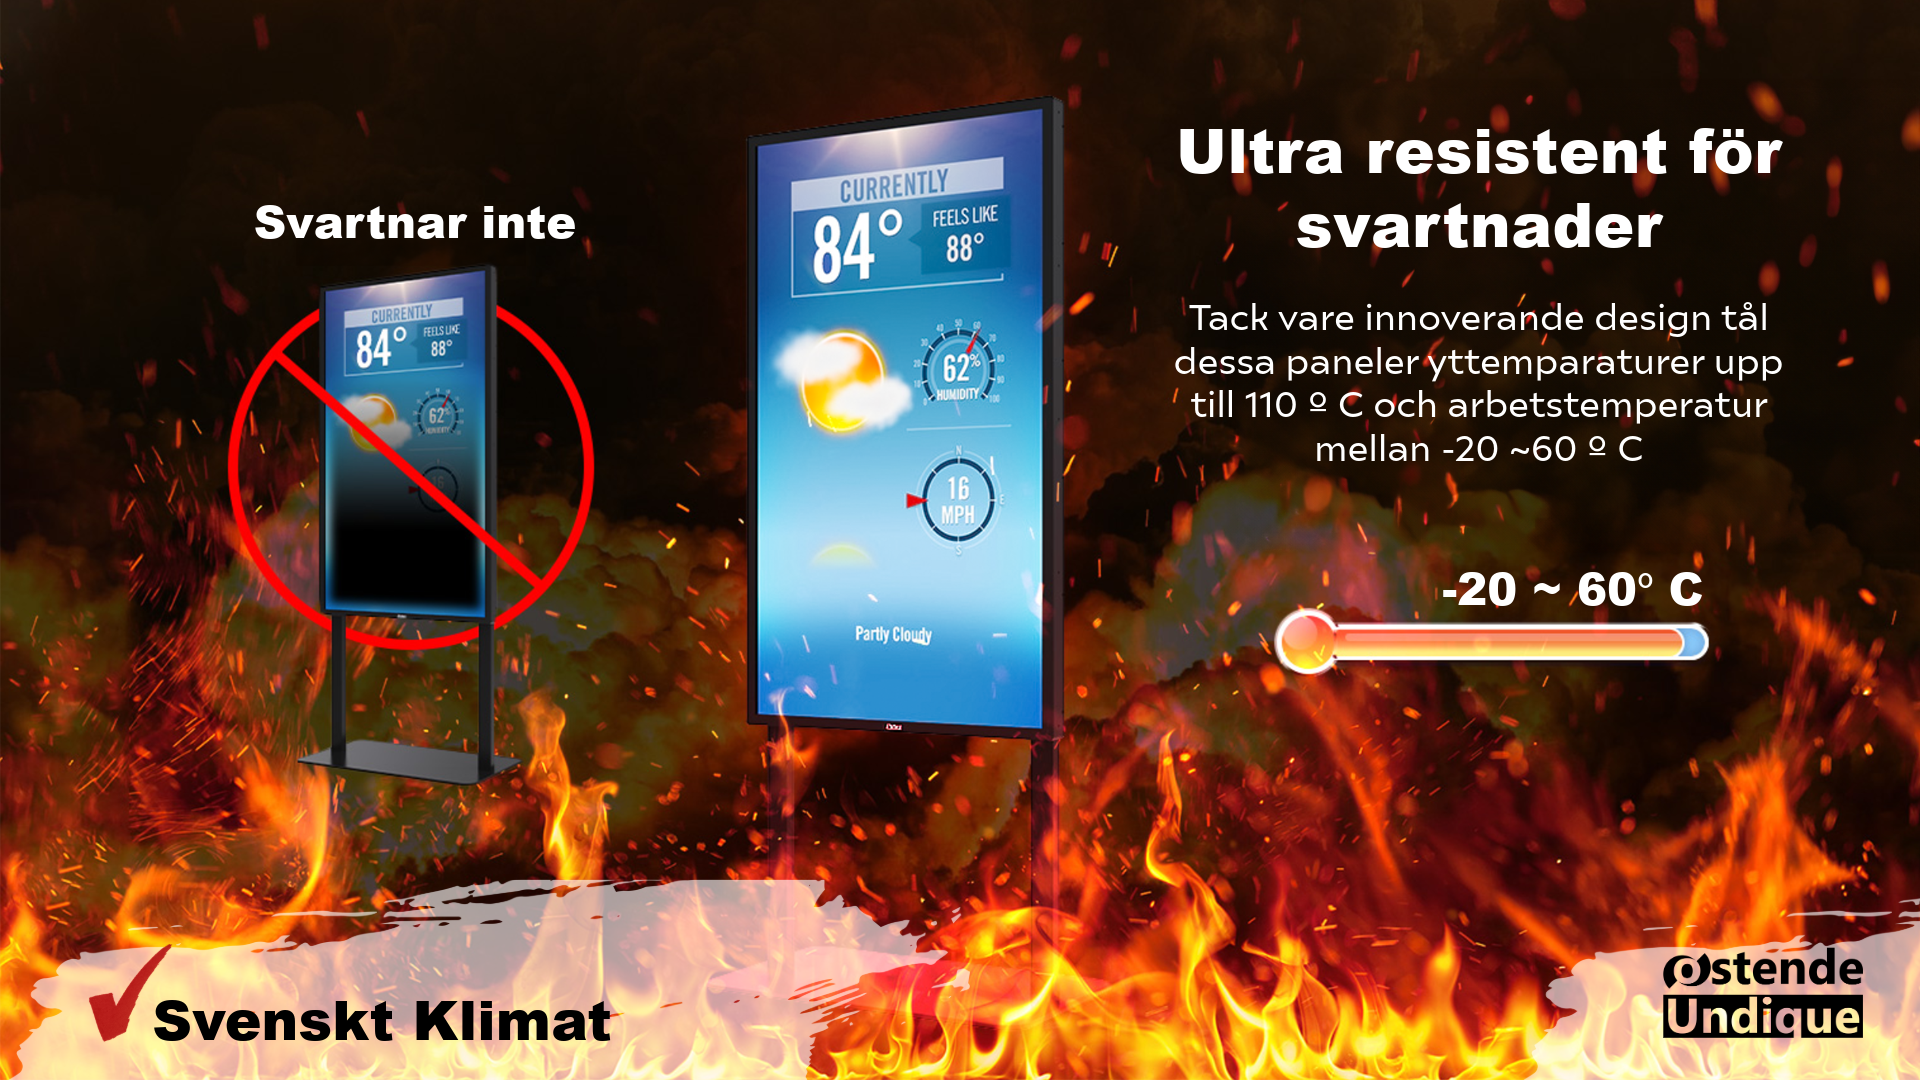 LCD-skärm med väderinformation och text om värmetålighet